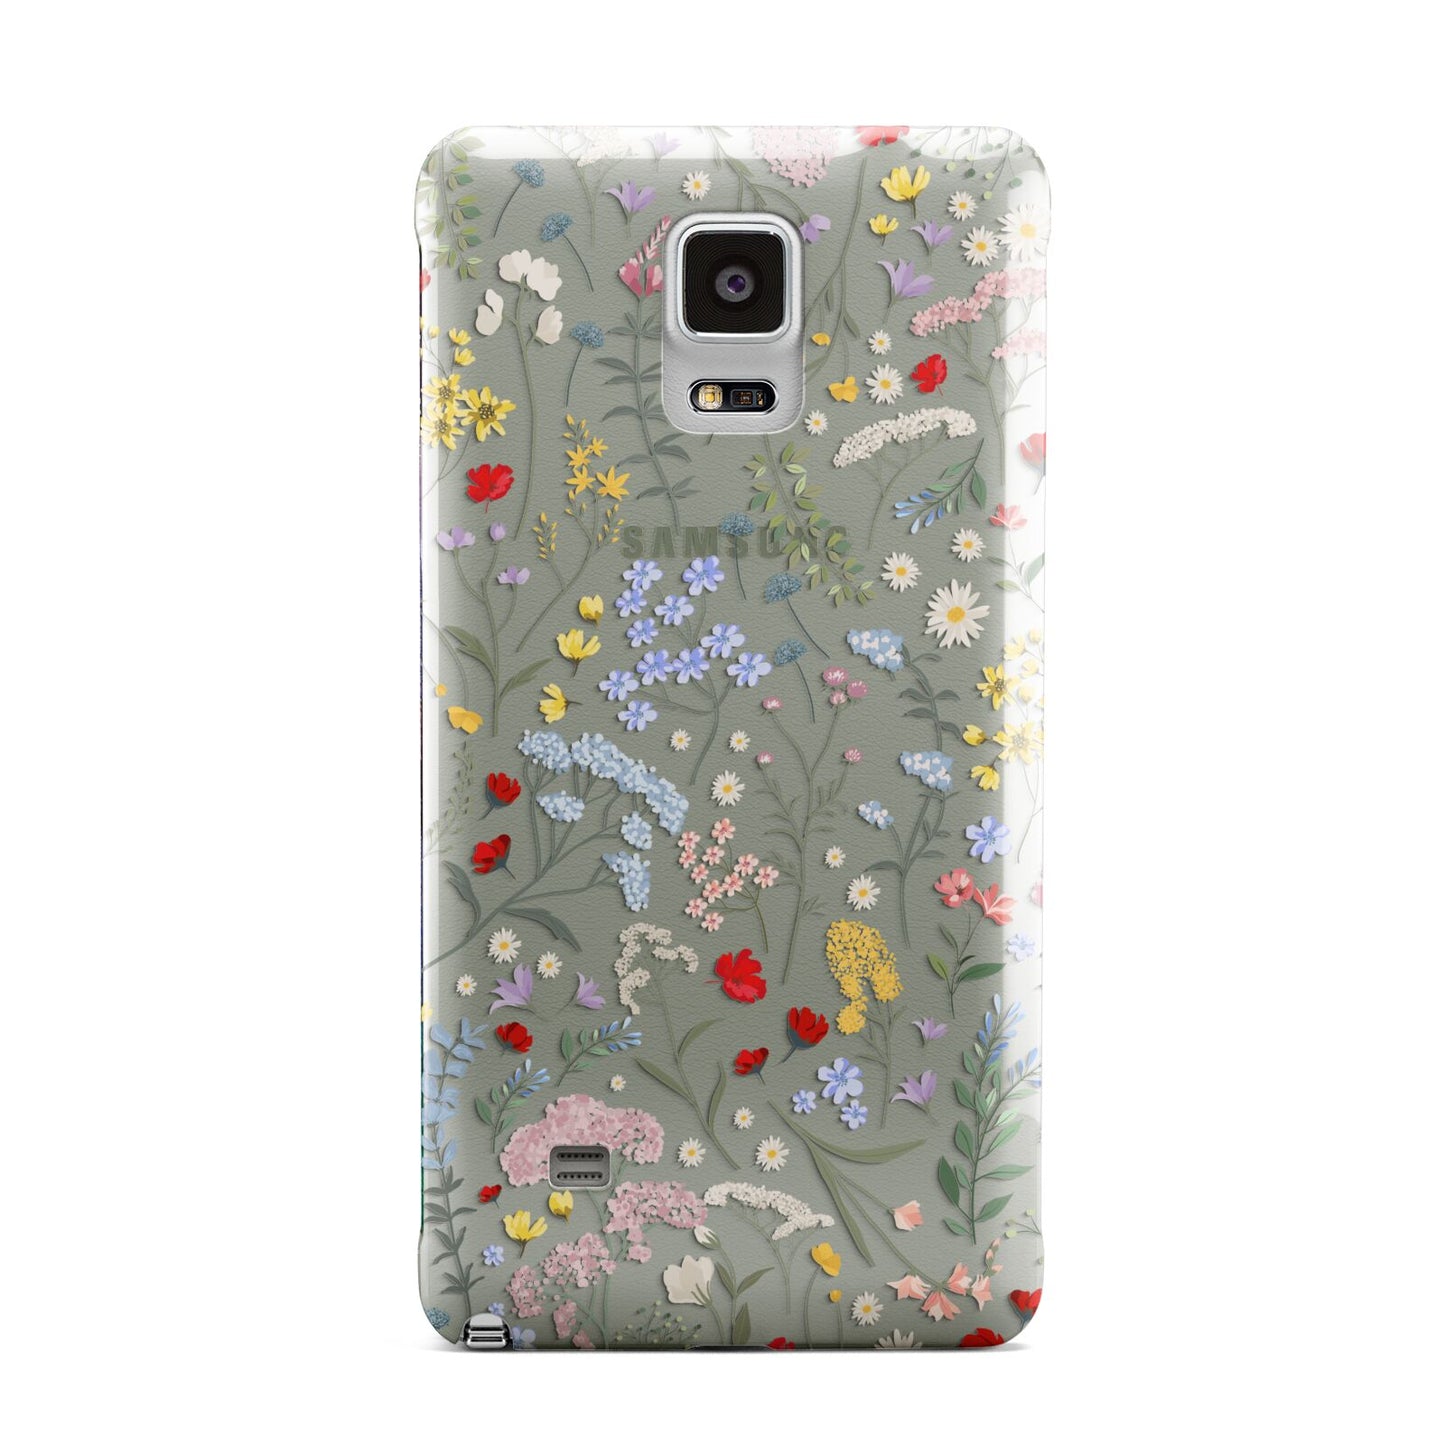 Wild Flowers Samsung Galaxy Note 4 Case